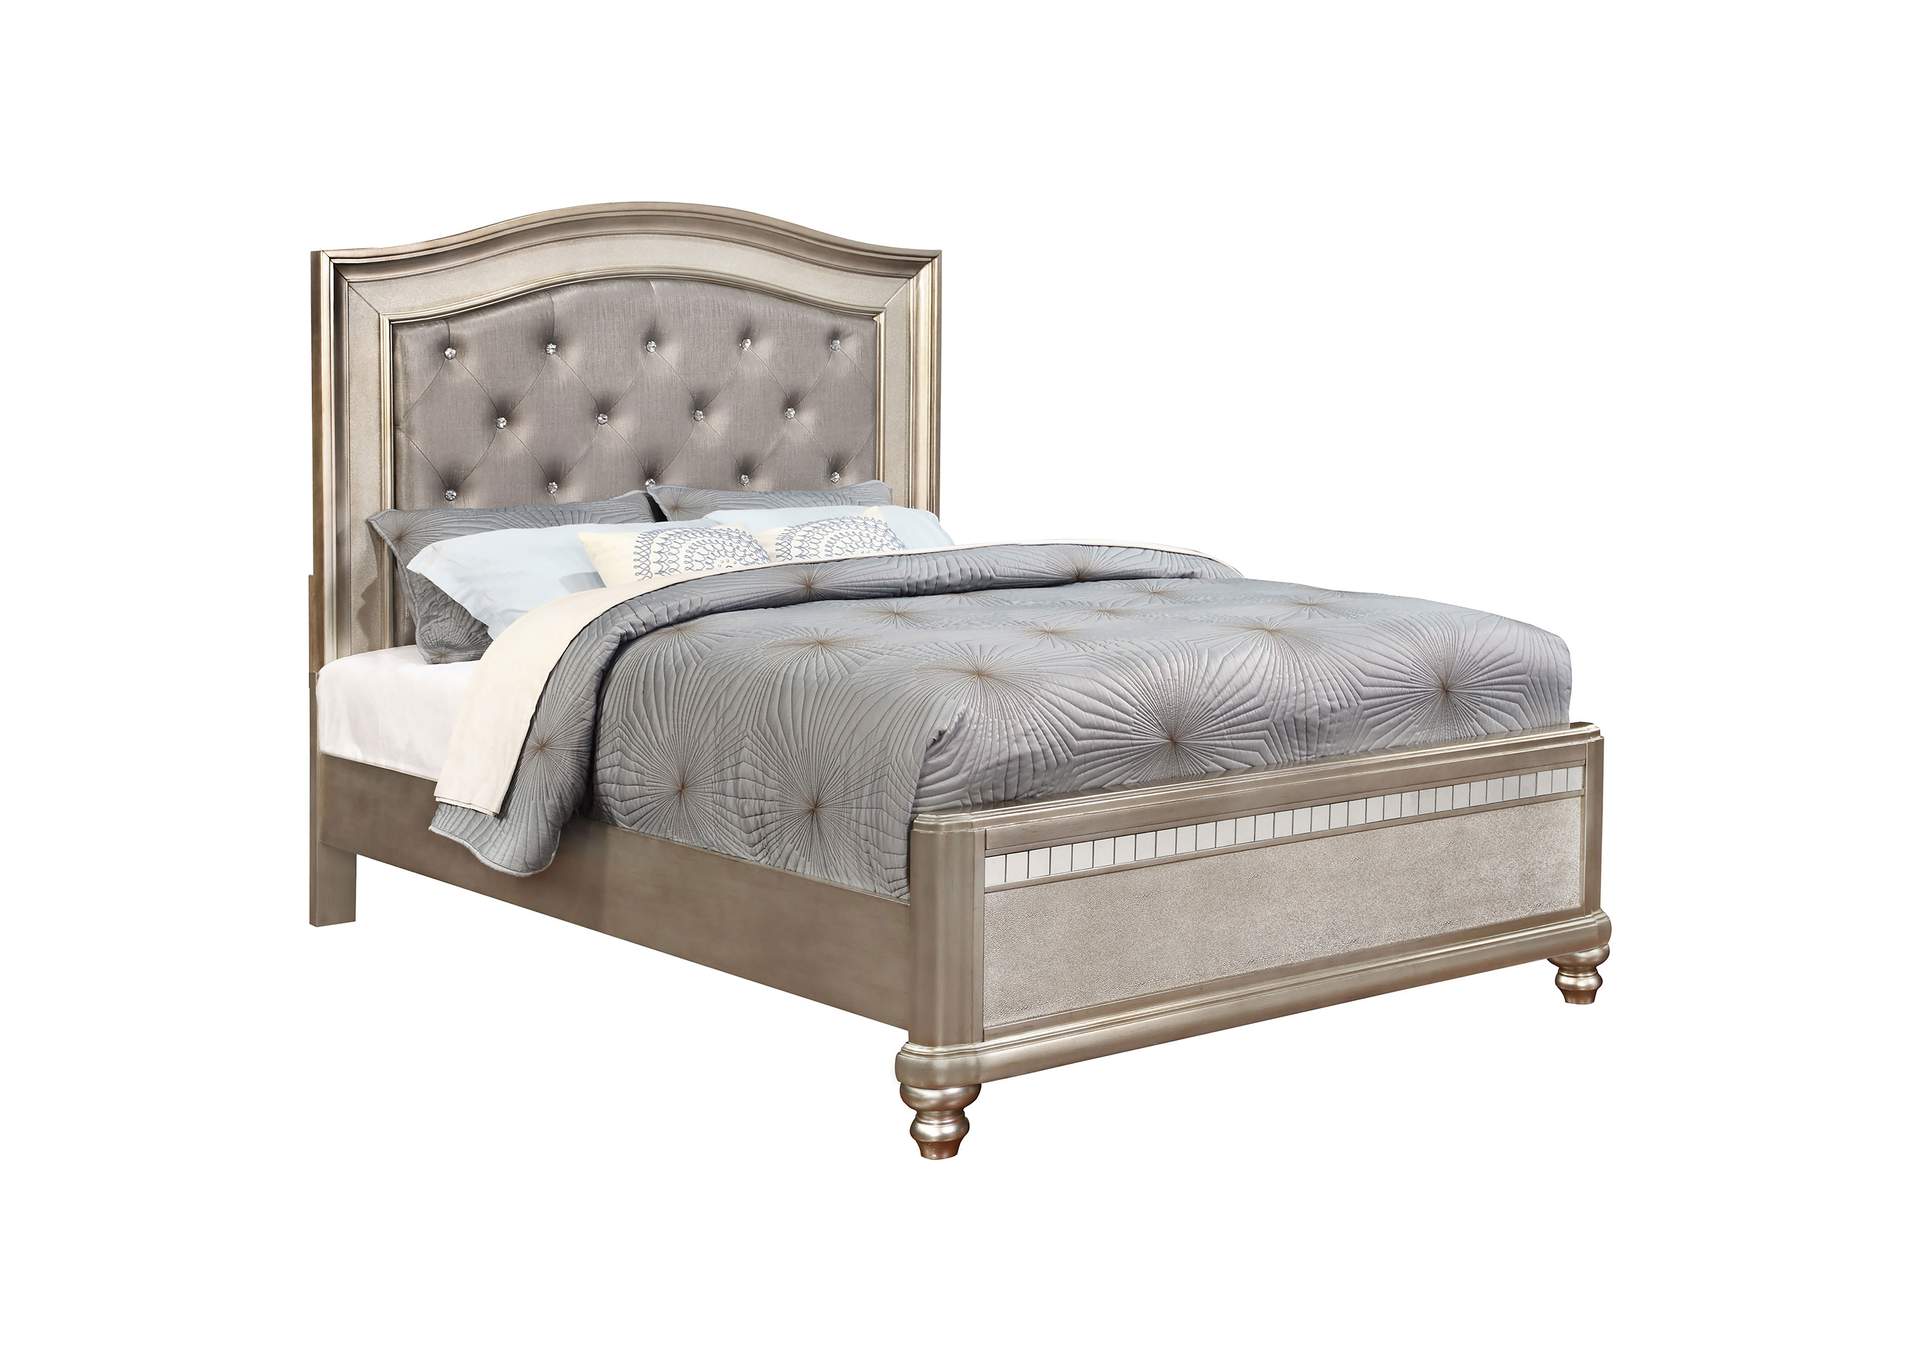 Bling Game Eastern King Panel Bed Metallic Platinum,Coaster Furniture